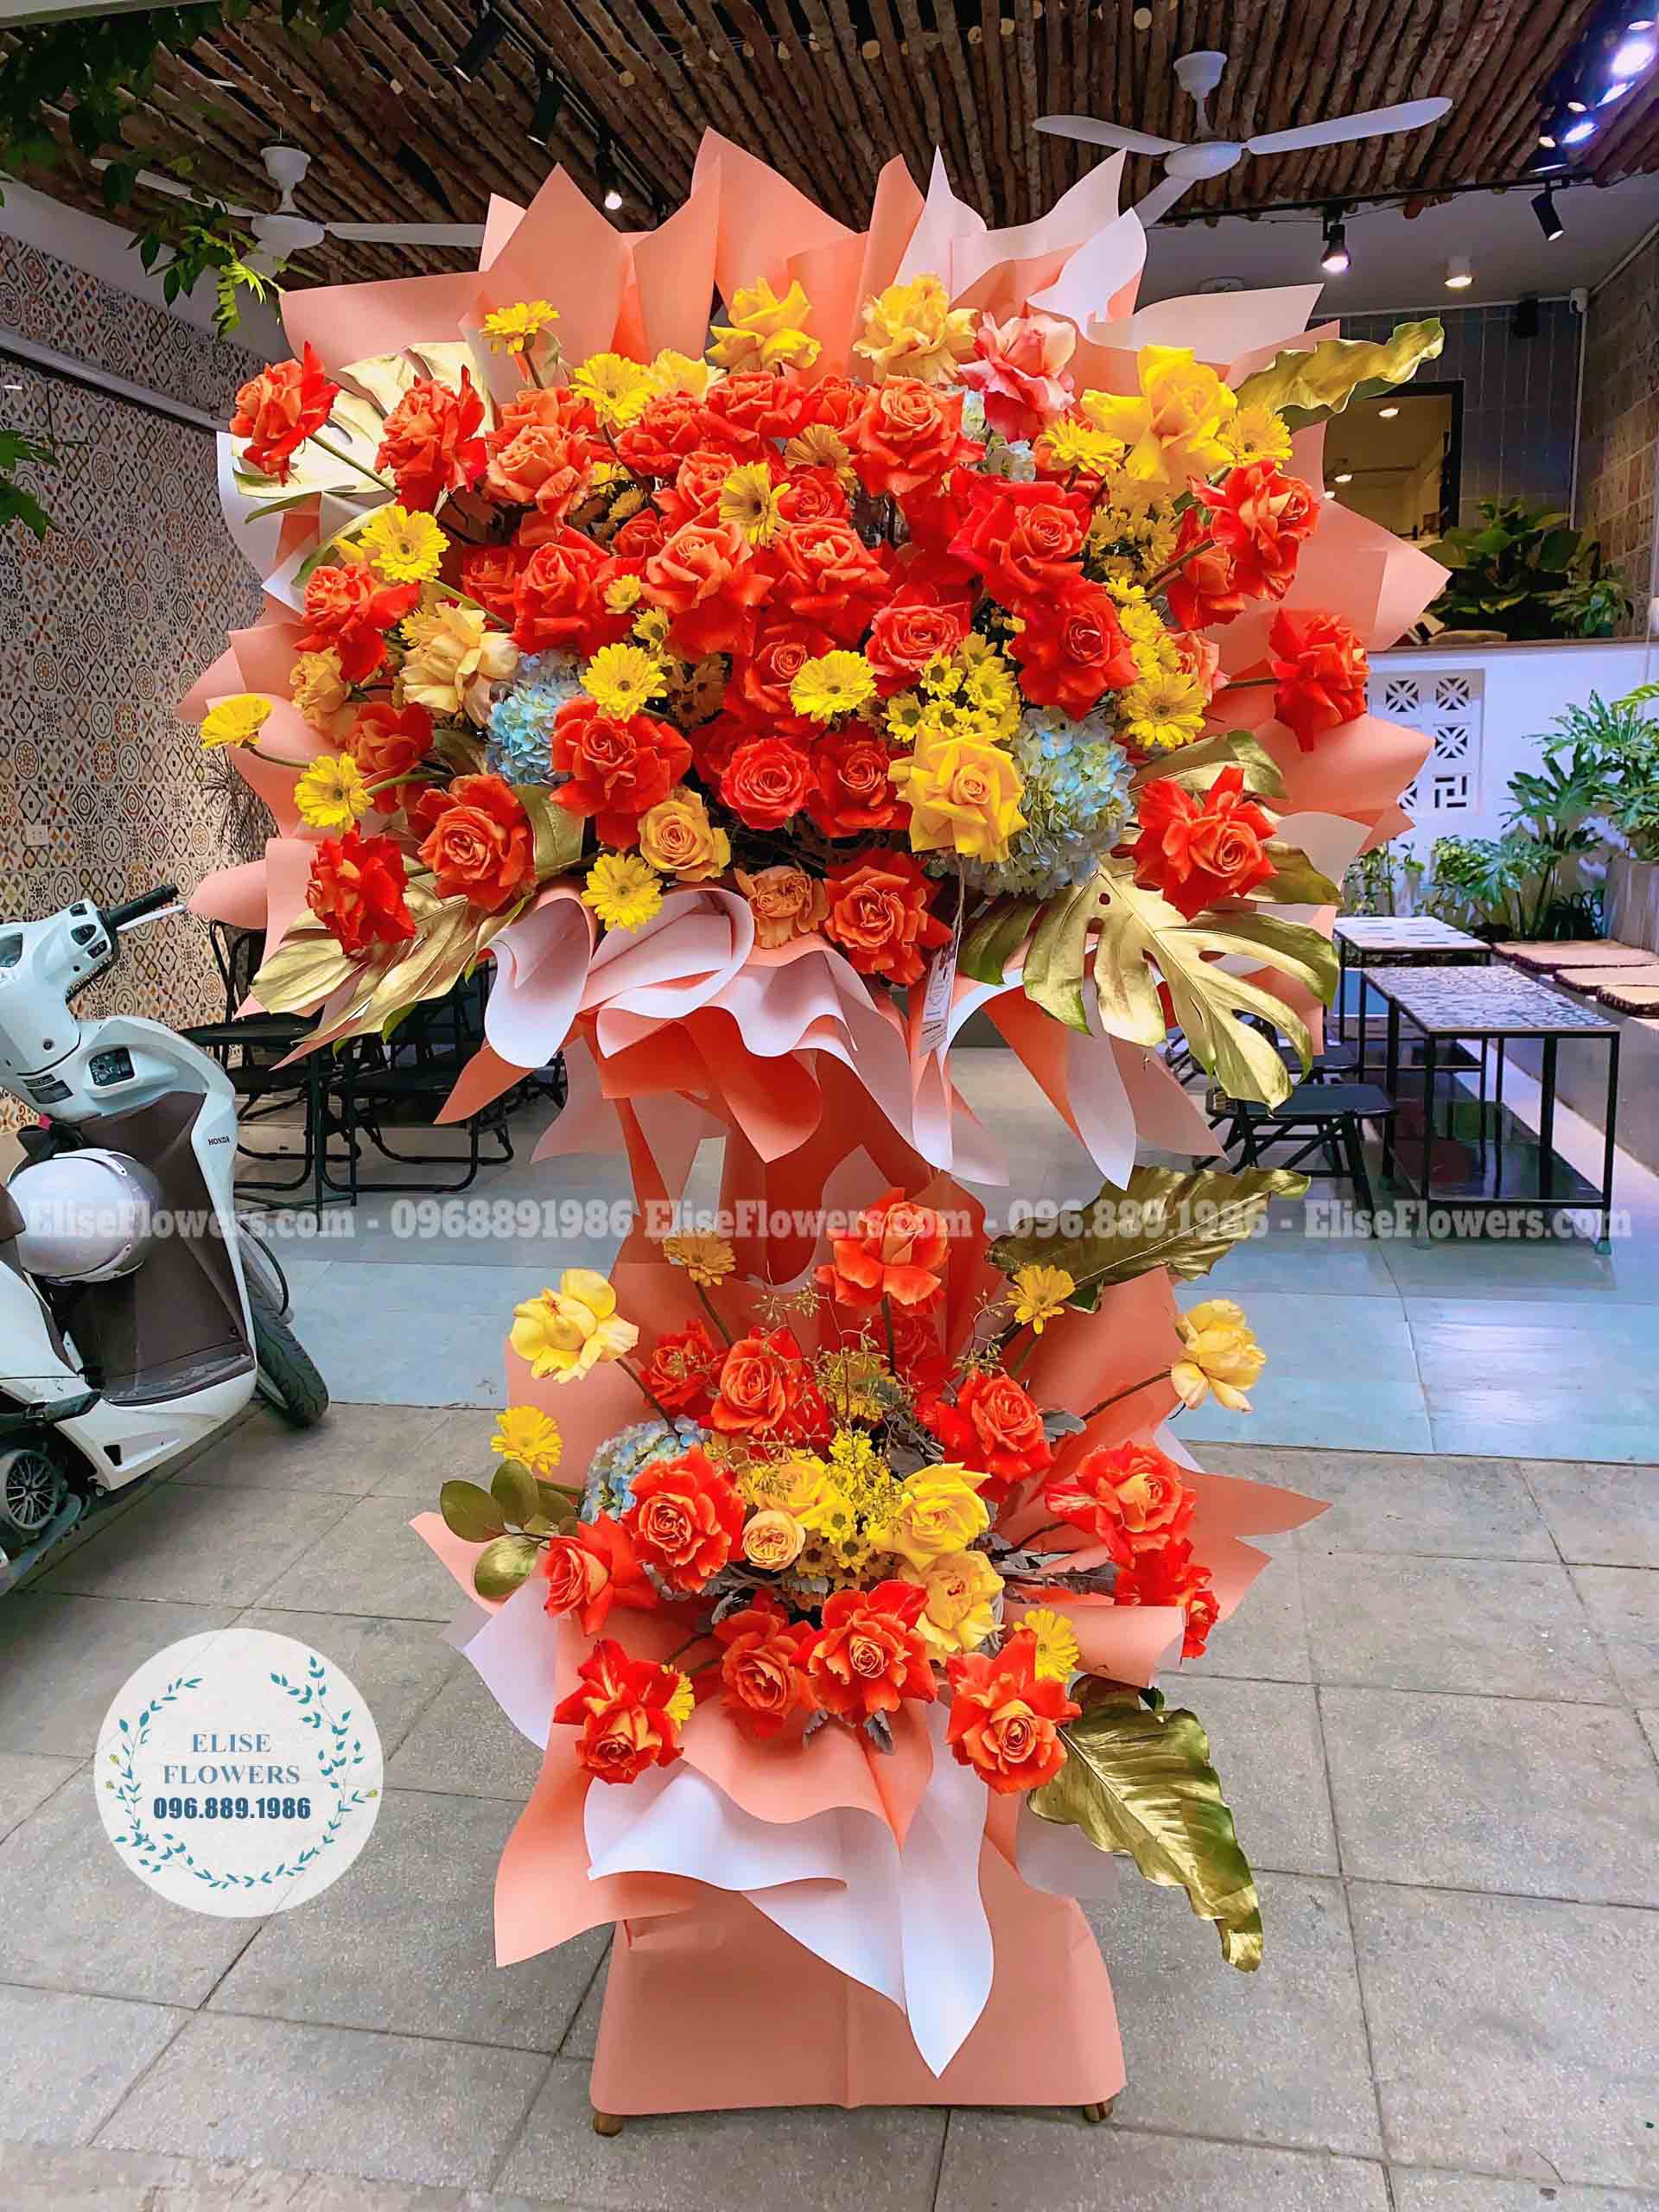 Kệ hoa 2 tầng màu cam sang trọng chúc mừng hội nghị, hội thảo | Dịch vụ điện hoa online - Giao hoa tận nơi tại quận Đống Đa - Hà Nội